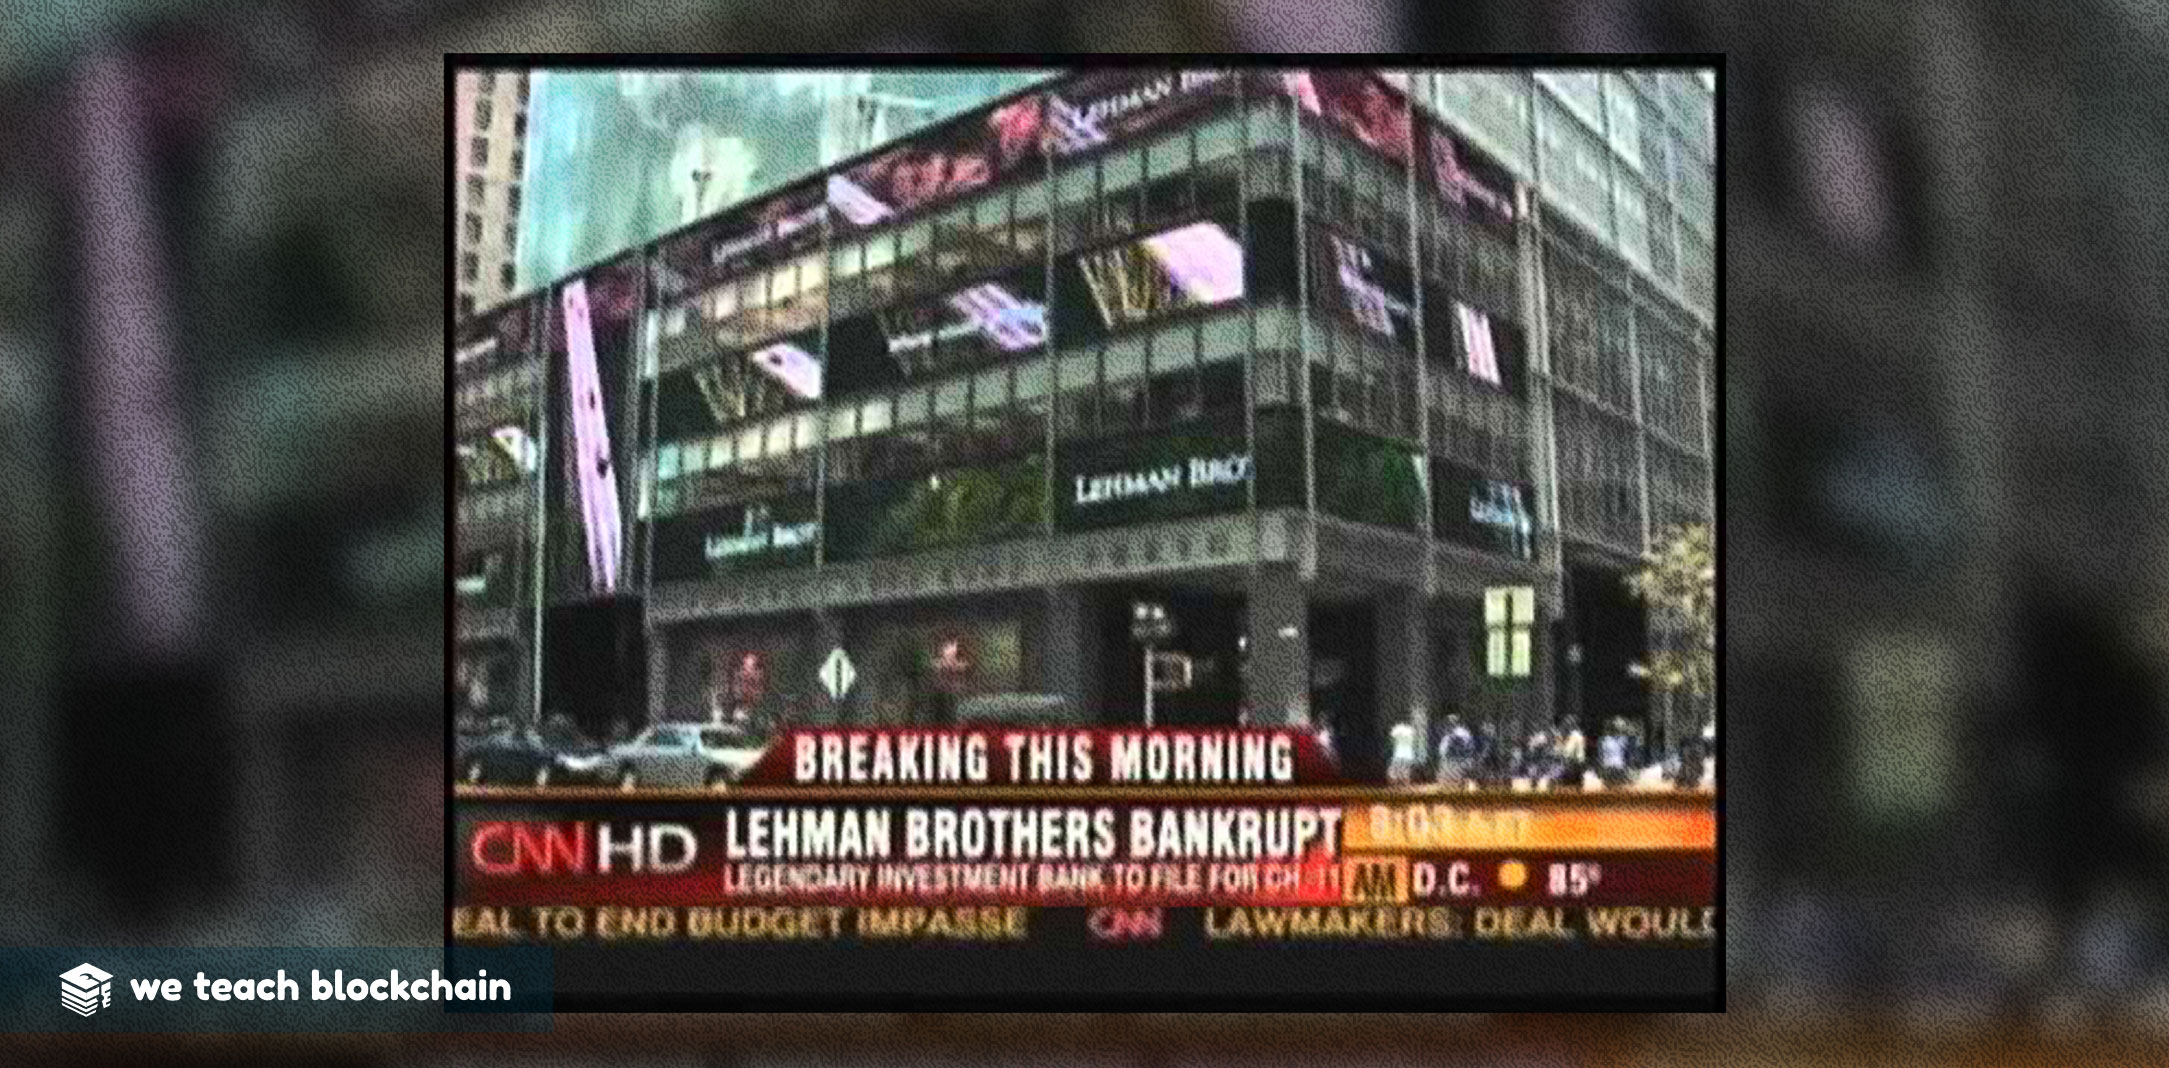 Breaking News CNN Lehman Brothers Bankrupt